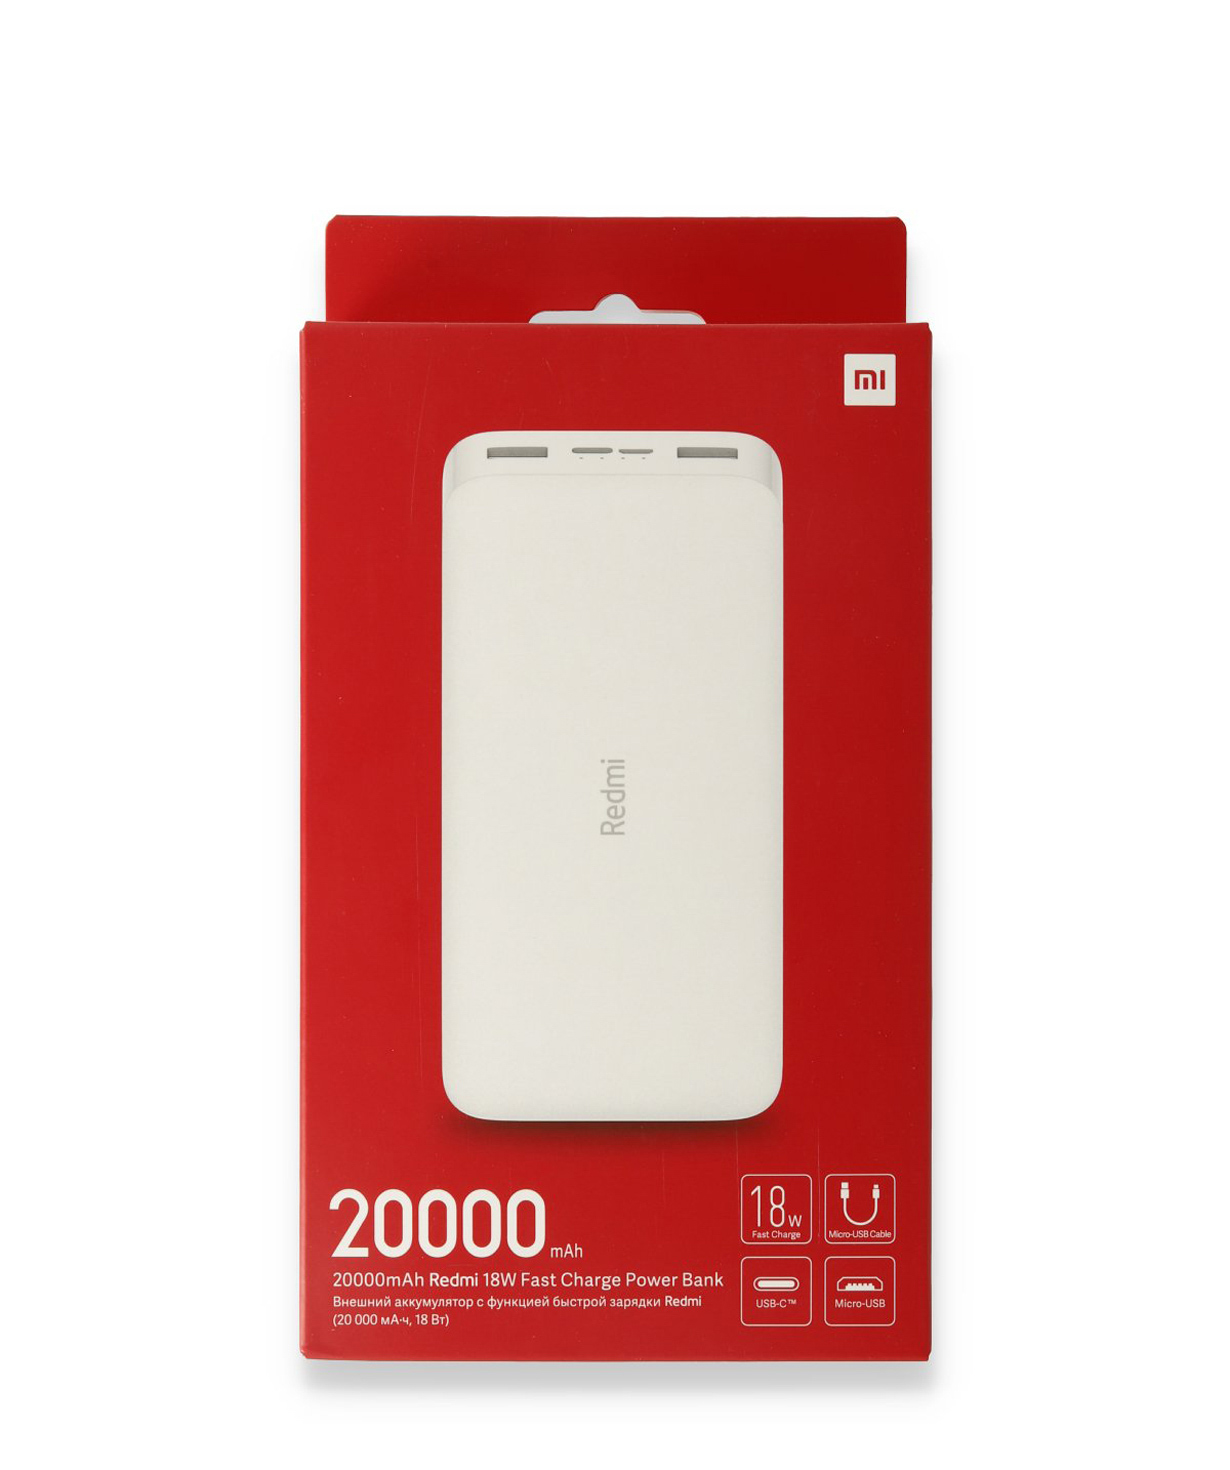 PowerBank `Xiaomi Redmi` 20,000 mAh